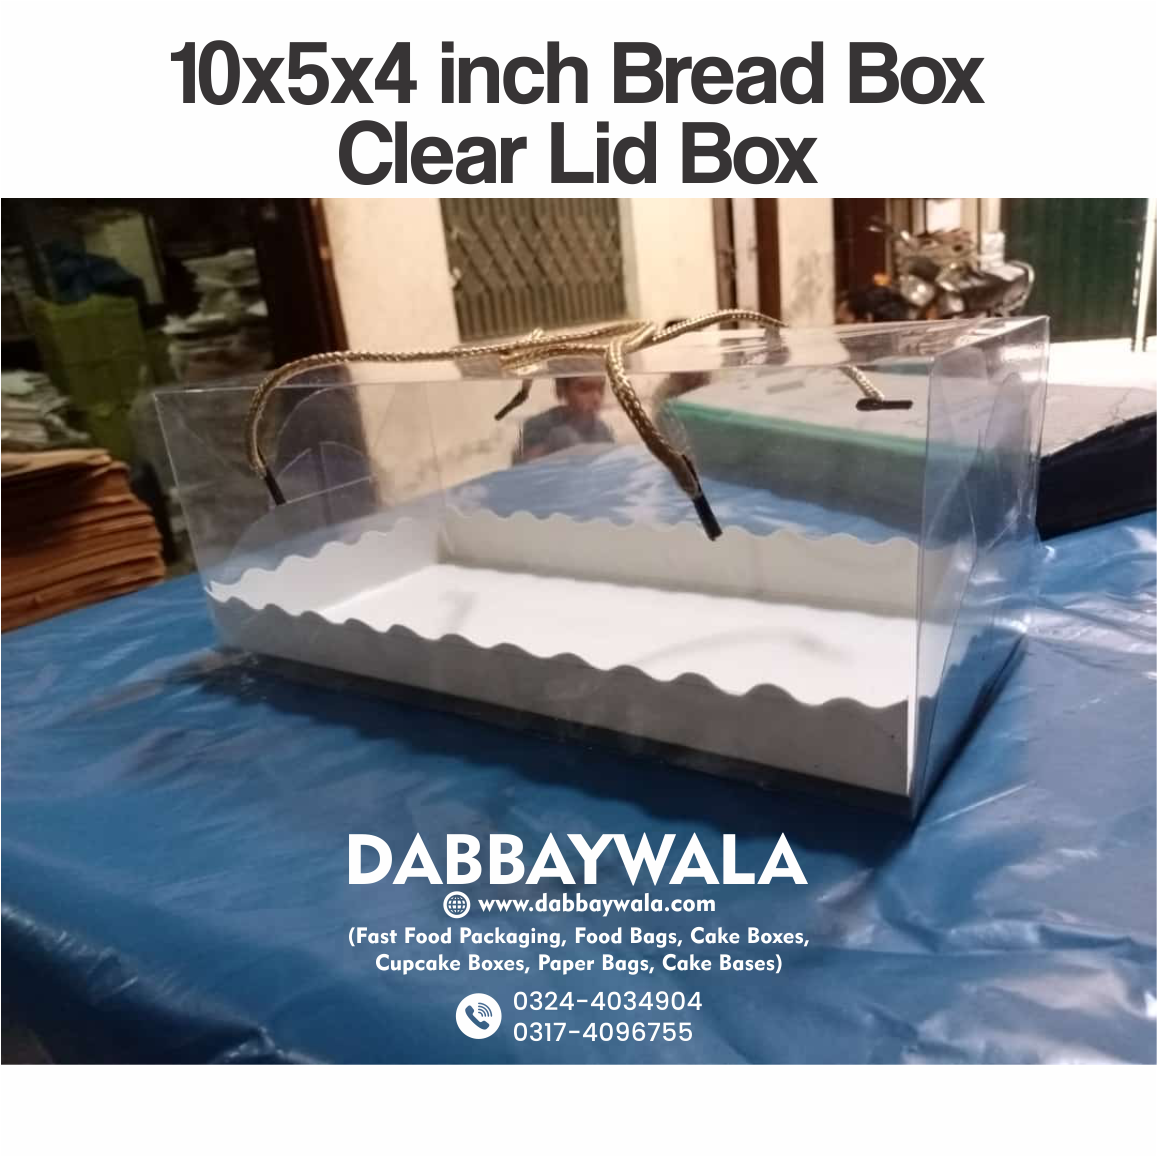 10x5x4 inch Bread Box Clear Lid Box